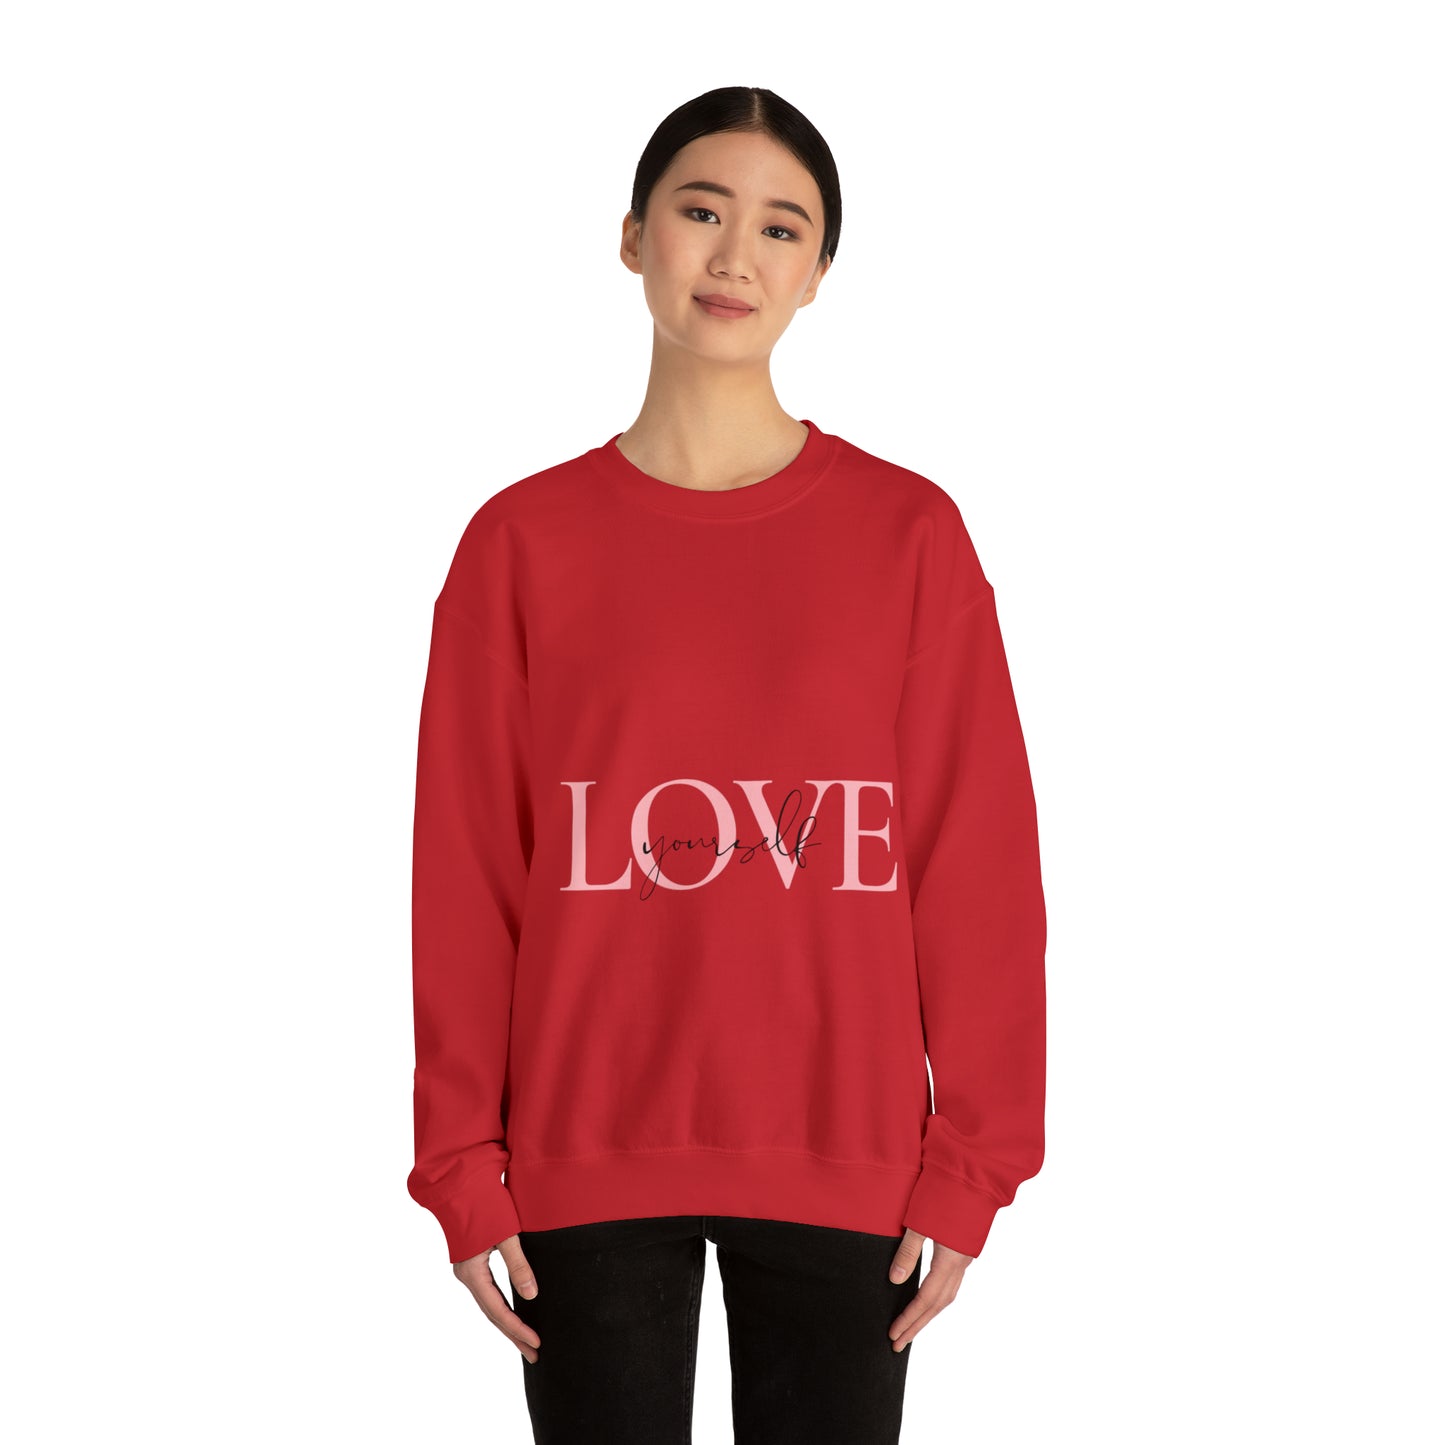 Love Yourself™ Unisex Crewneck Sweatshirt